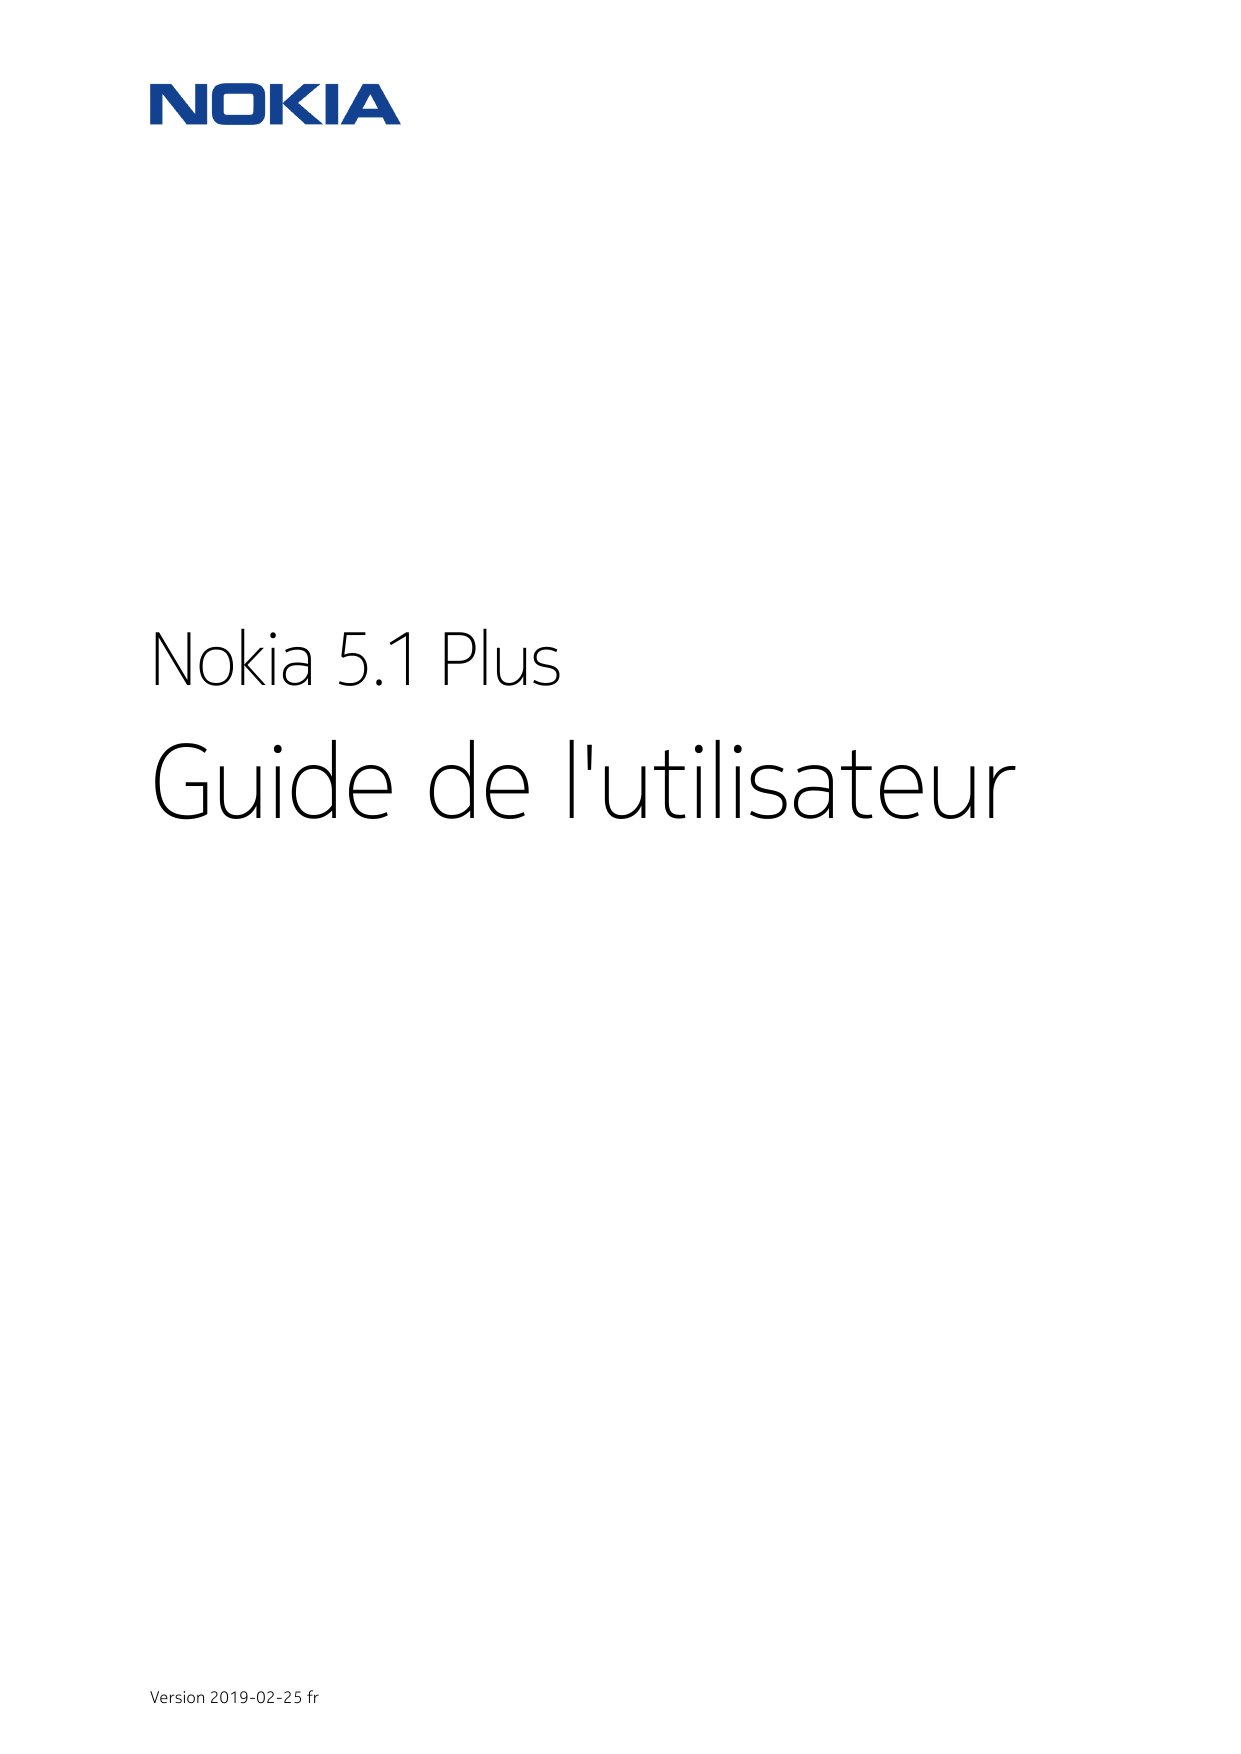 Nokia 5.1 PlusGuide de l'utilisateurVersion 2019-02-25 fr